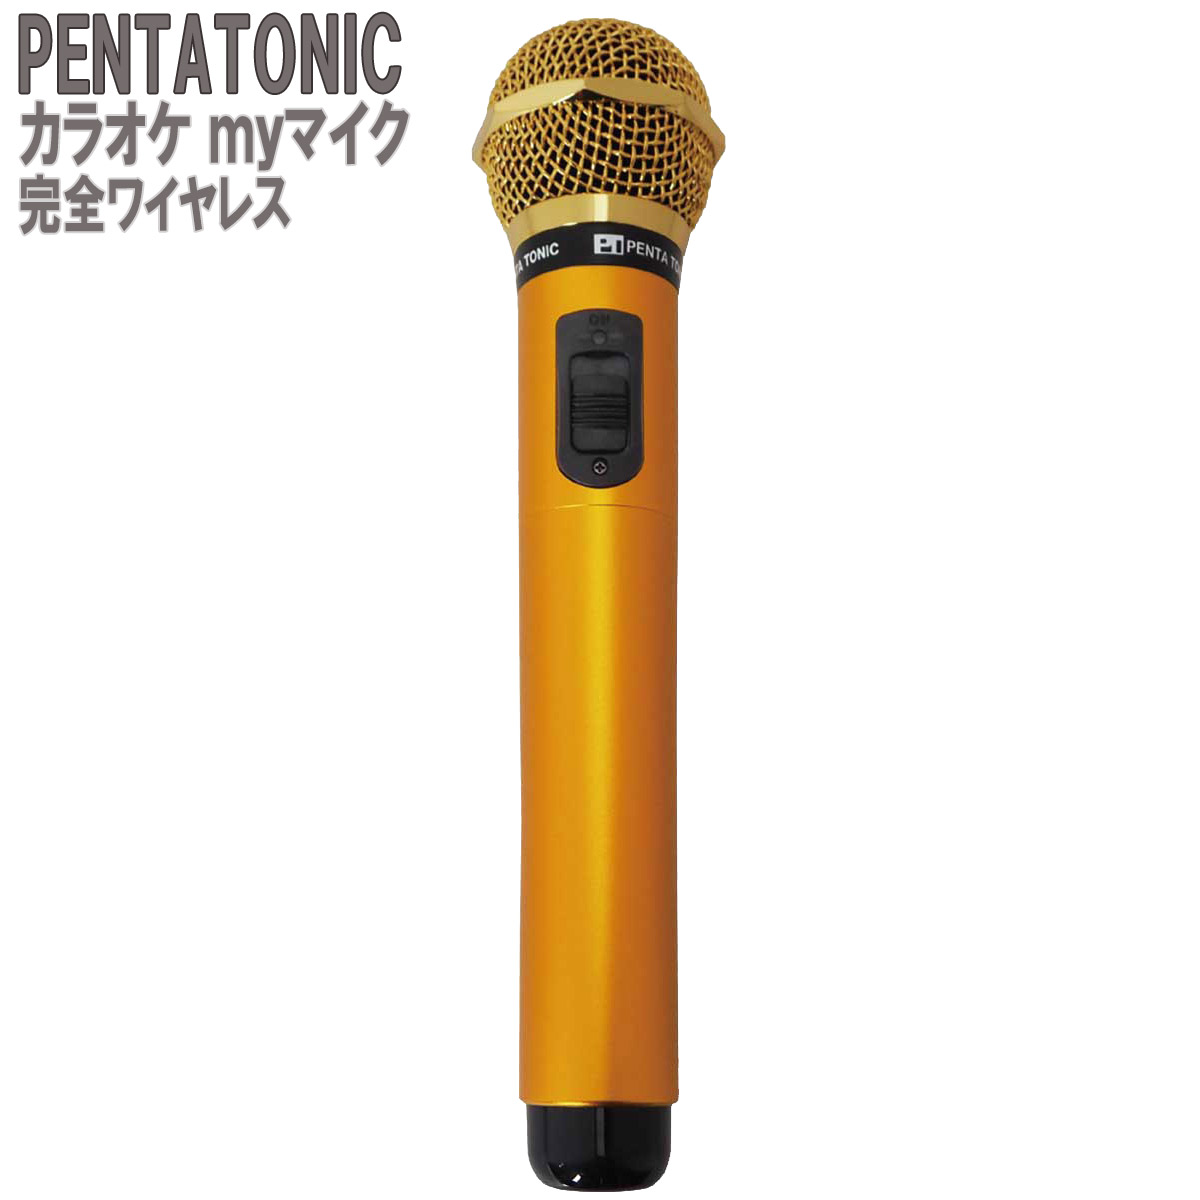 PENTATONIC カラオケマイク GTM-150 ゴールド カラオケ用マイク 赤外線